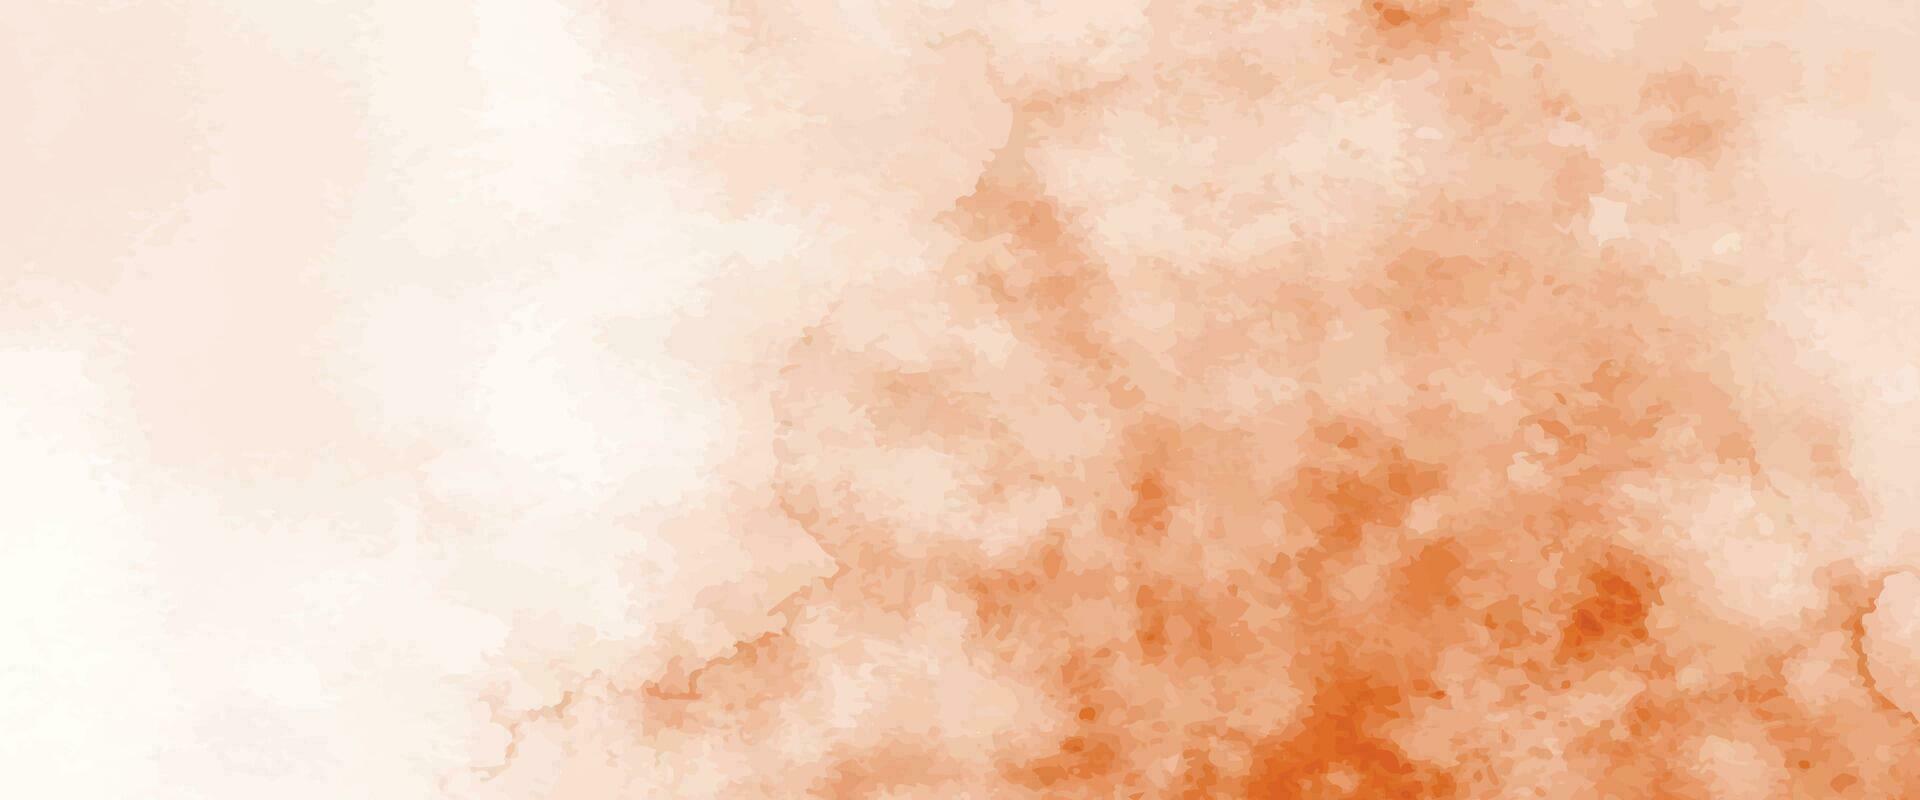 aquarelle orange abstraite pour le fond vecteur